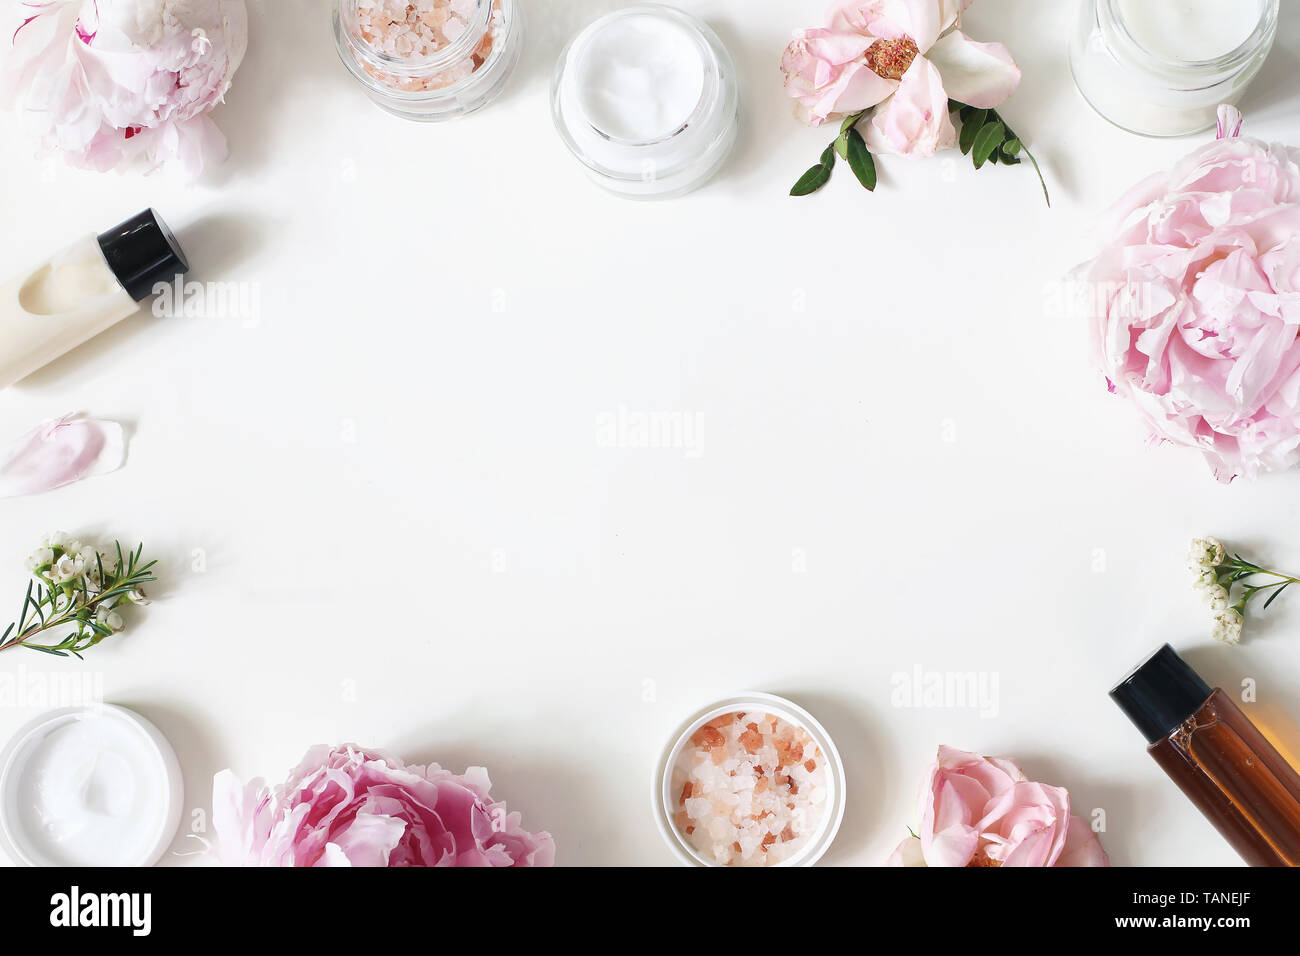 Styled Schönheit frame, Web Banner. Hautcreme, Shampoo, tonicum Flaschen, Blätter, Rose, Pfingstrose Blumen und Salz auf hite Tabelle Hintergrund. Organische Stockfoto